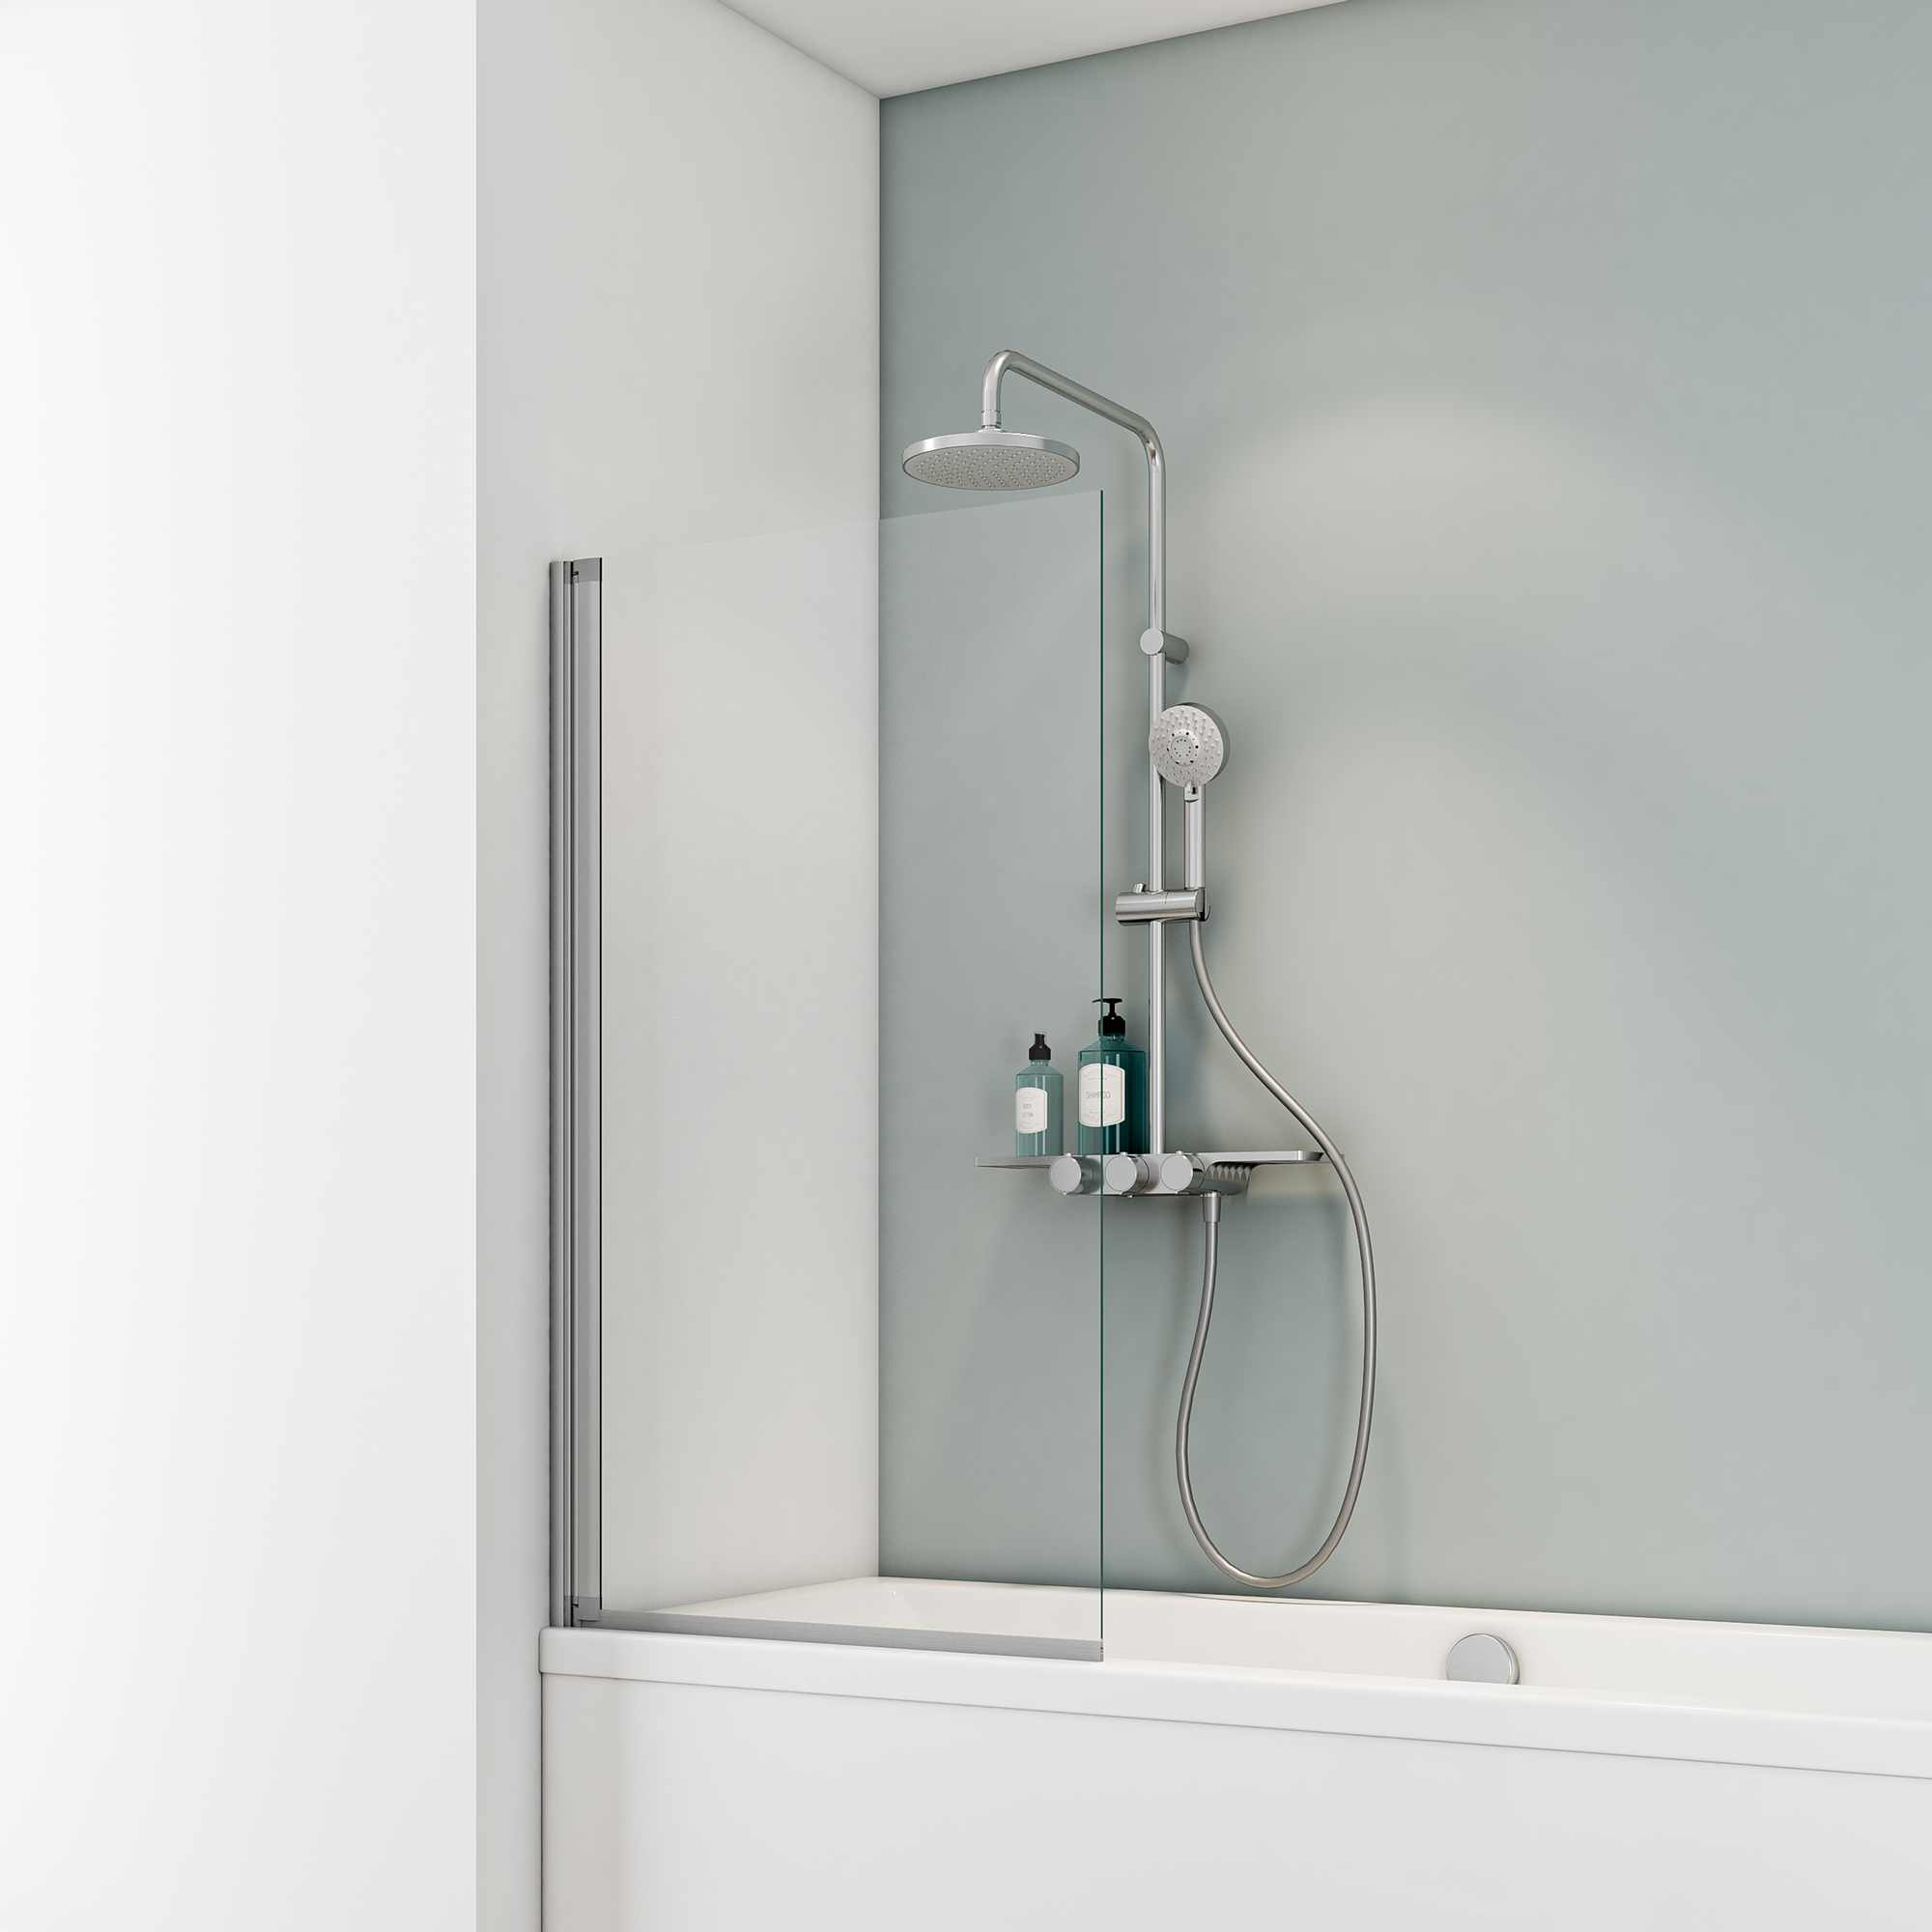 Badewannenfaltwand 'Komfort' teilgerahmt, aluminiumfarben, 70 x 130 cm, 1-teilig + product picture